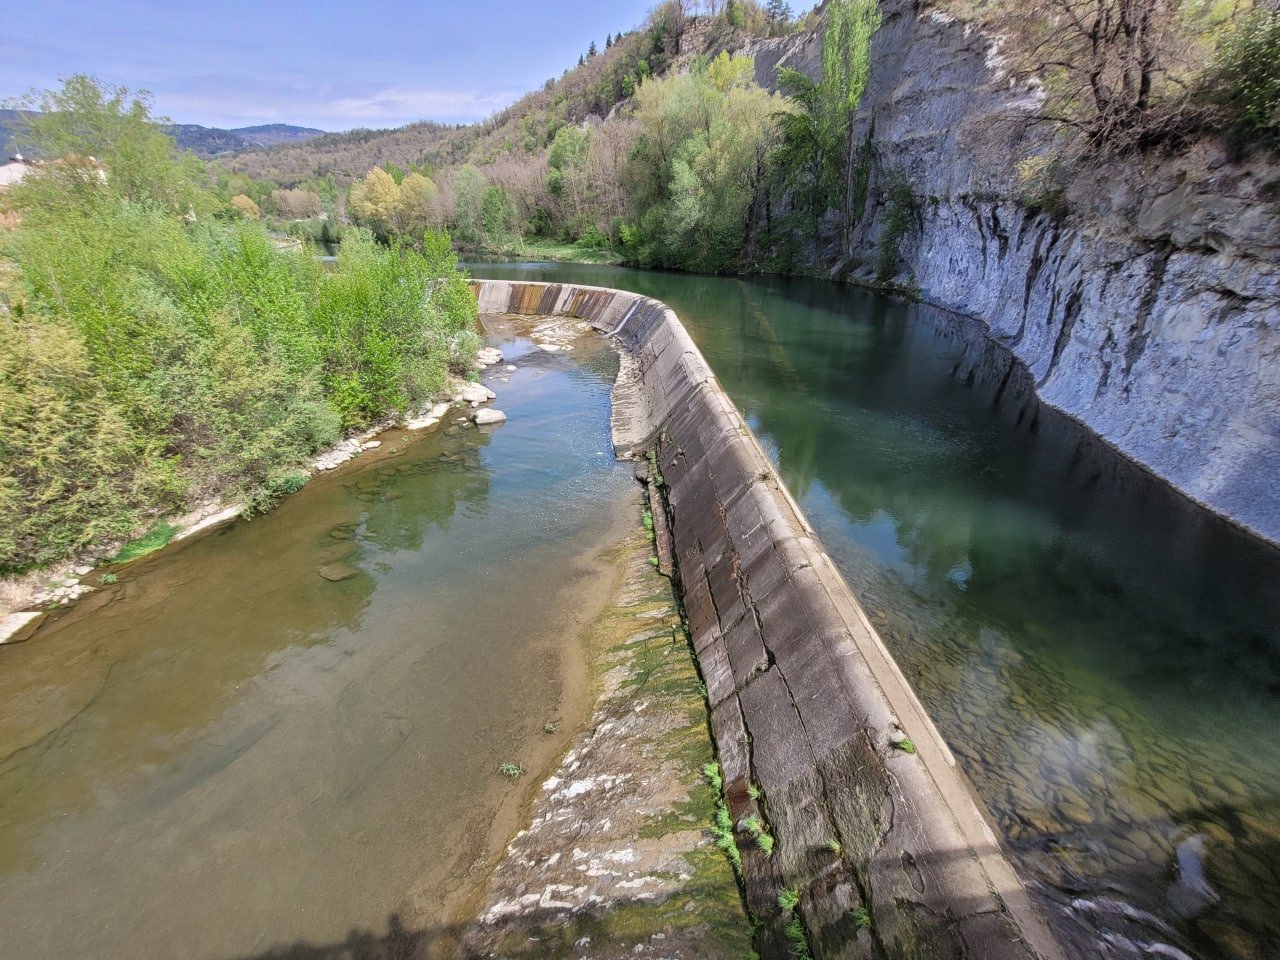 La Generalitat inicia expedientes para gestionar tres centrales hidroeléctricas